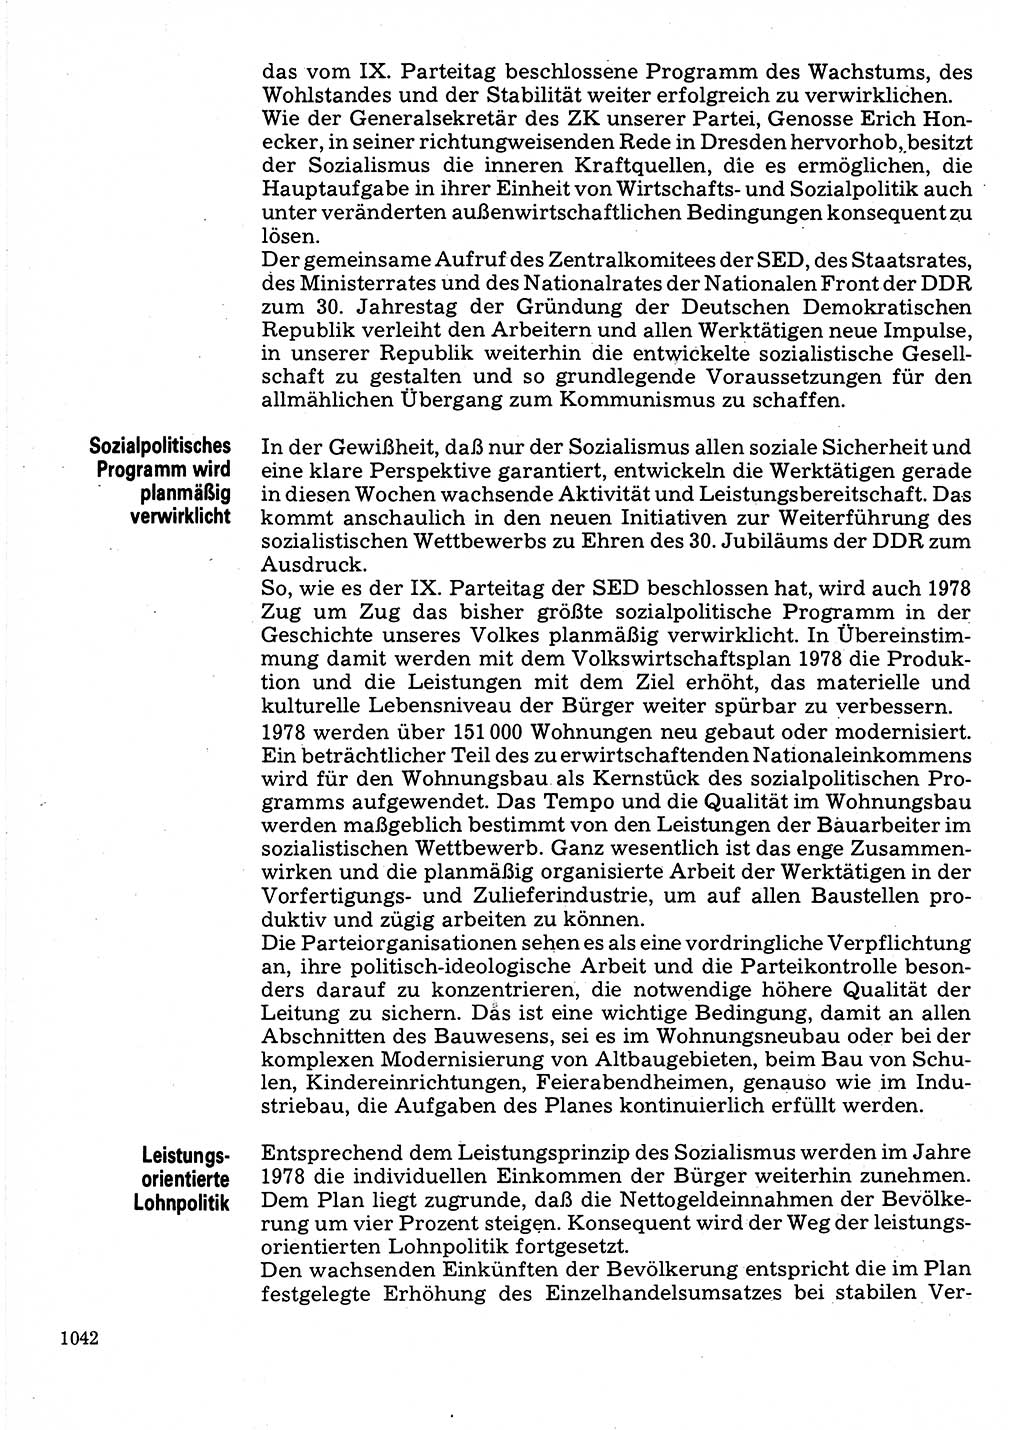 Neuer Weg (NW), Organ des Zentralkomitees (ZK) der SED (Sozialistische Einheitspartei Deutschlands) für Fragen des Parteilebens, 32. Jahrgang [Deutsche Demokratische Republik (DDR)] 1977, Seite 1042 (NW ZK SED DDR 1977, S. 1042)